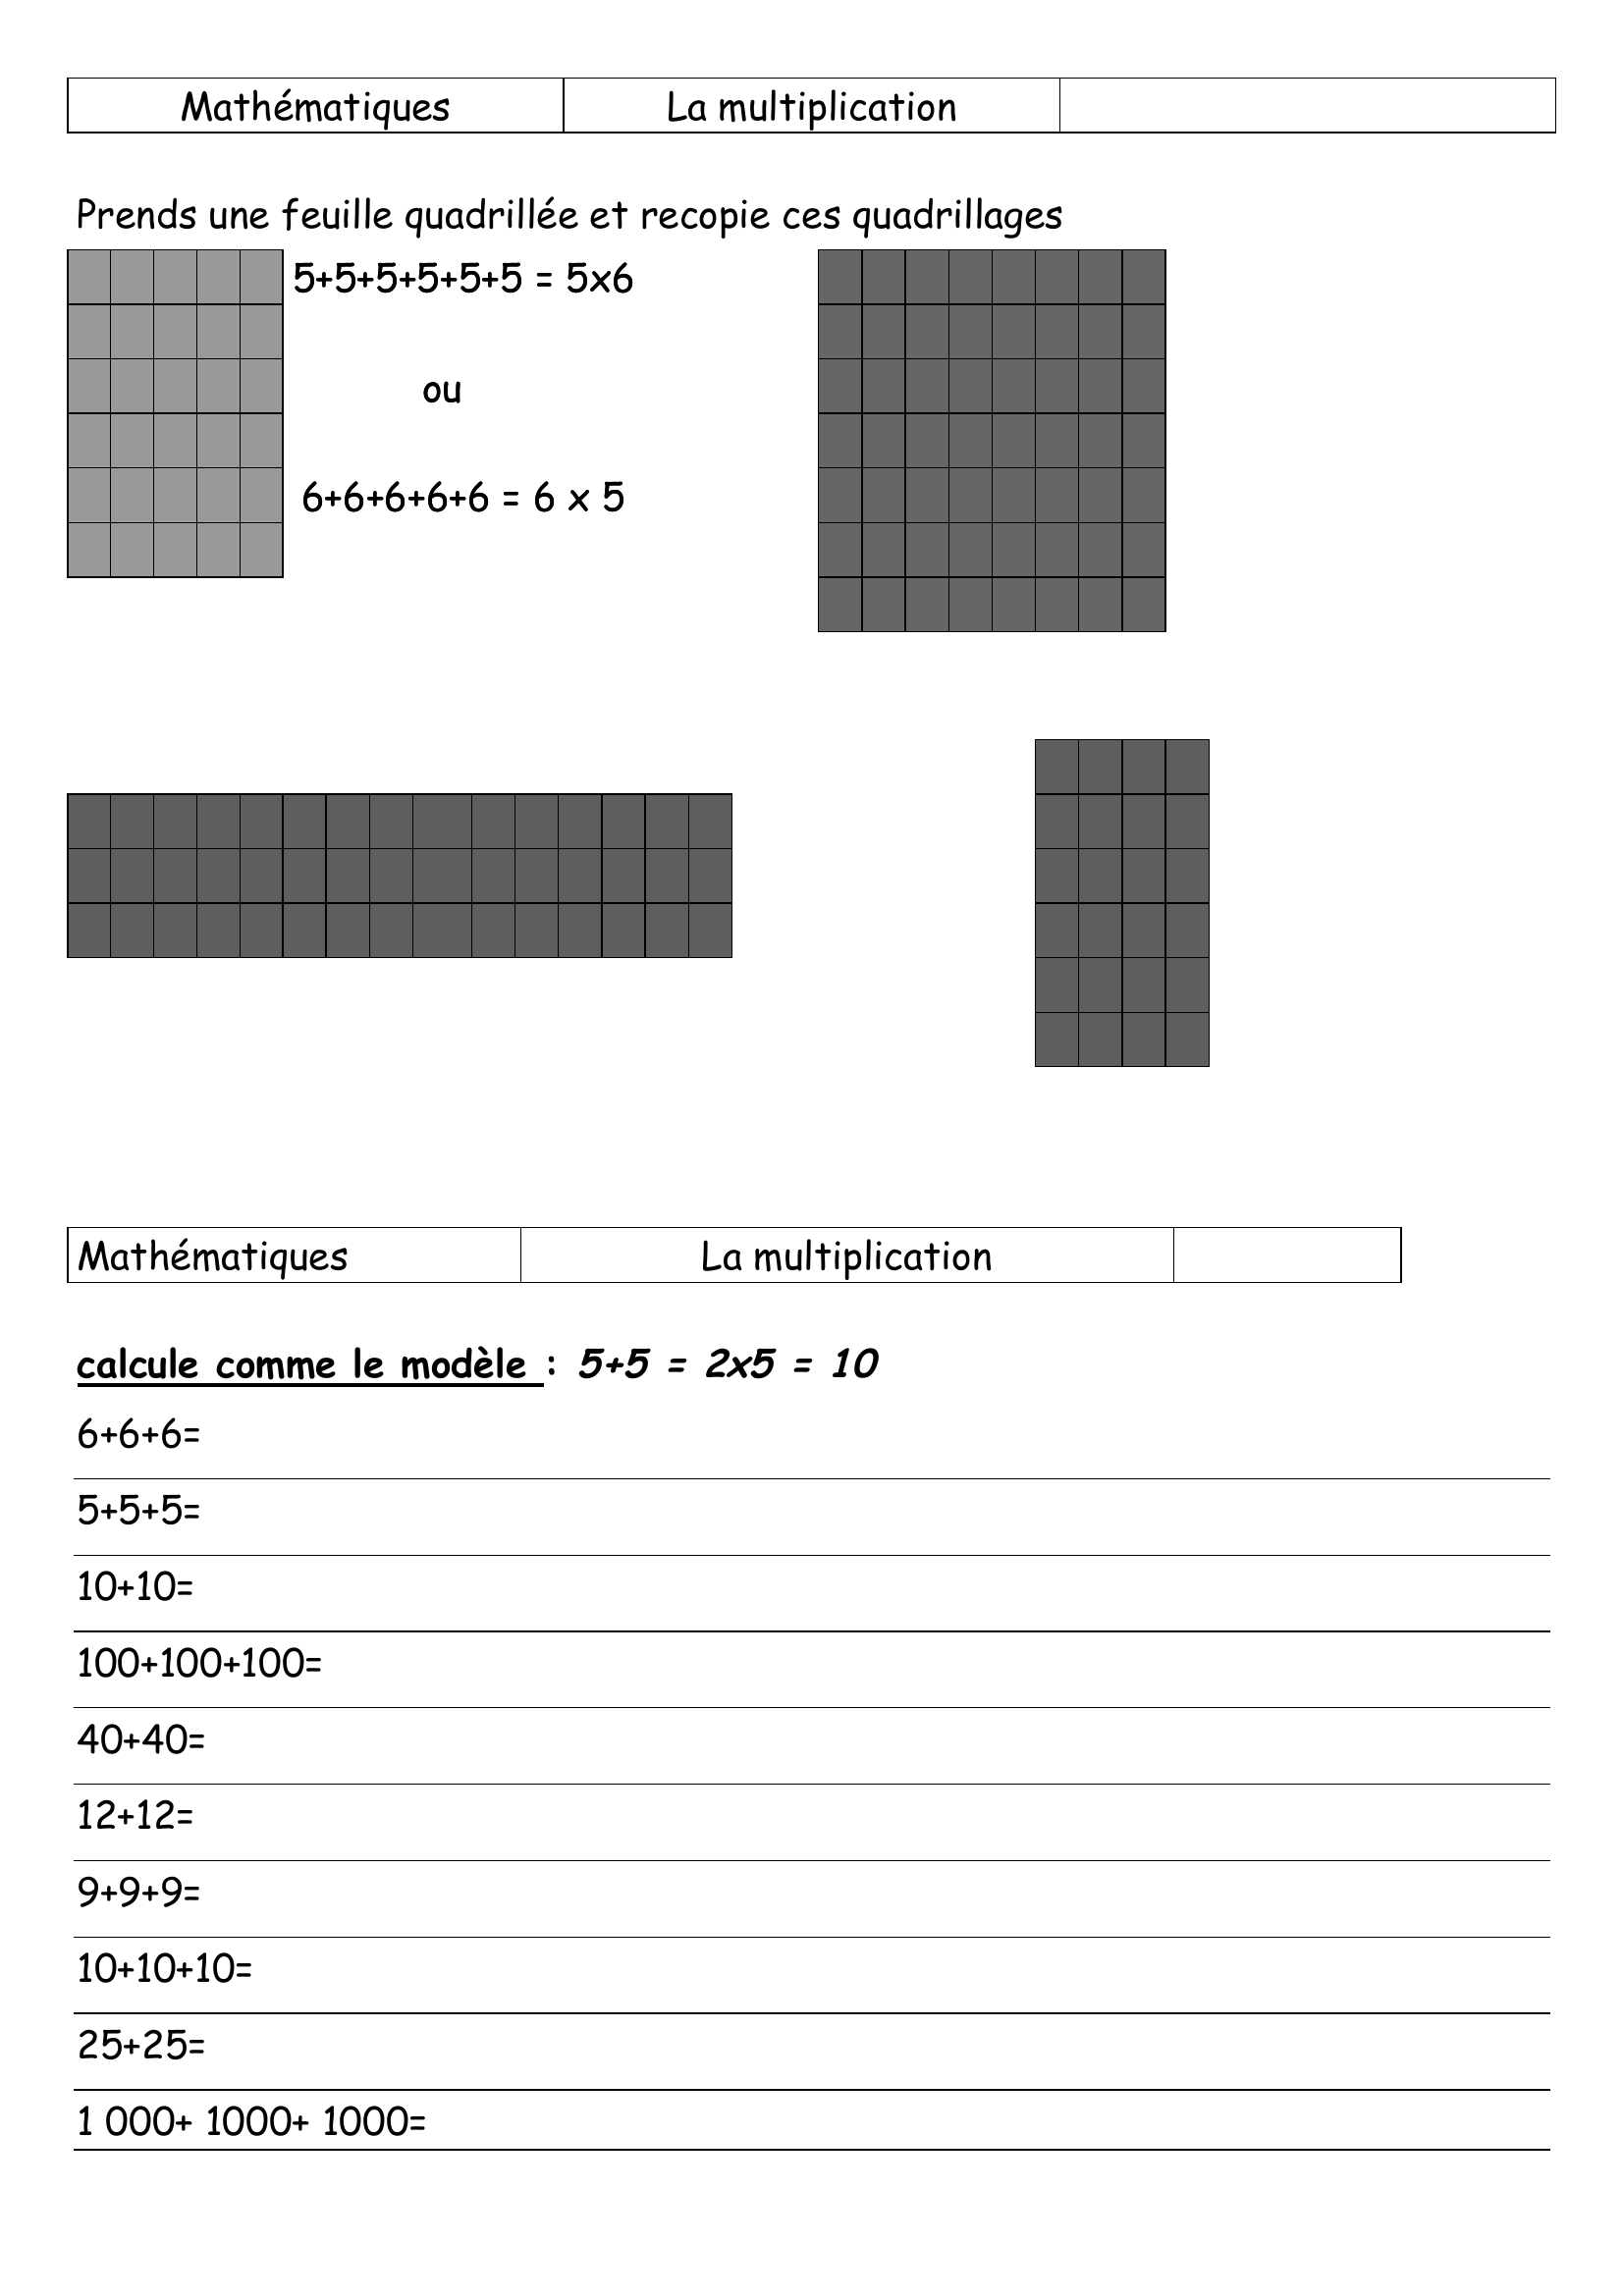 Prévisualisation du document Mathématiques

La multiplication

Prends une feuille quadrillée et recopie ces quadrillages
5+5+5+5+5+5 =